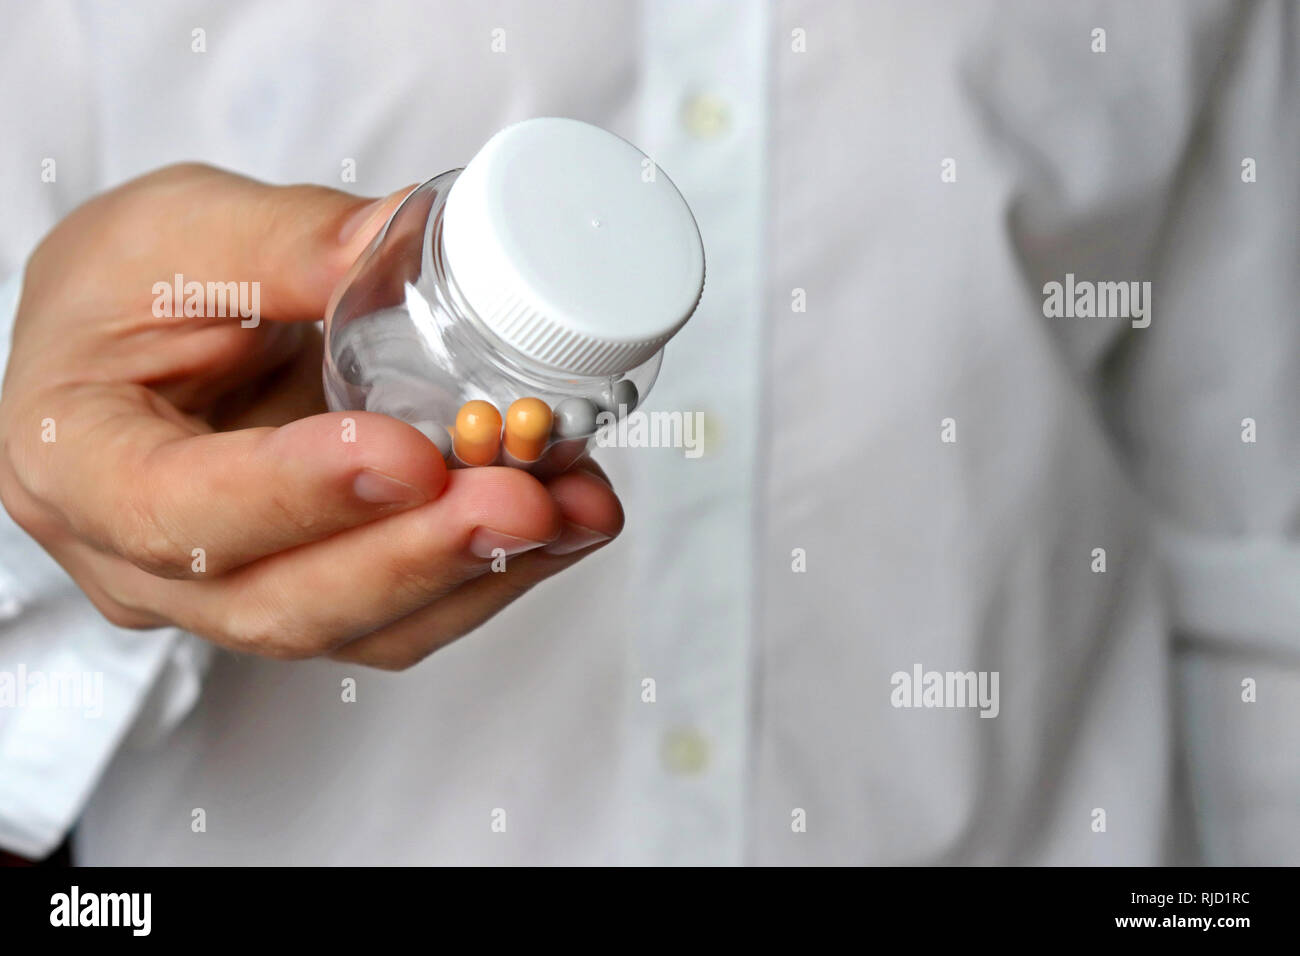 Medico dando bottiglia con le pillole, farmaci in capsule. Concetto di esame medico, la dose dei farmaci, vitamine, sedativi, farmacia Foto Stock